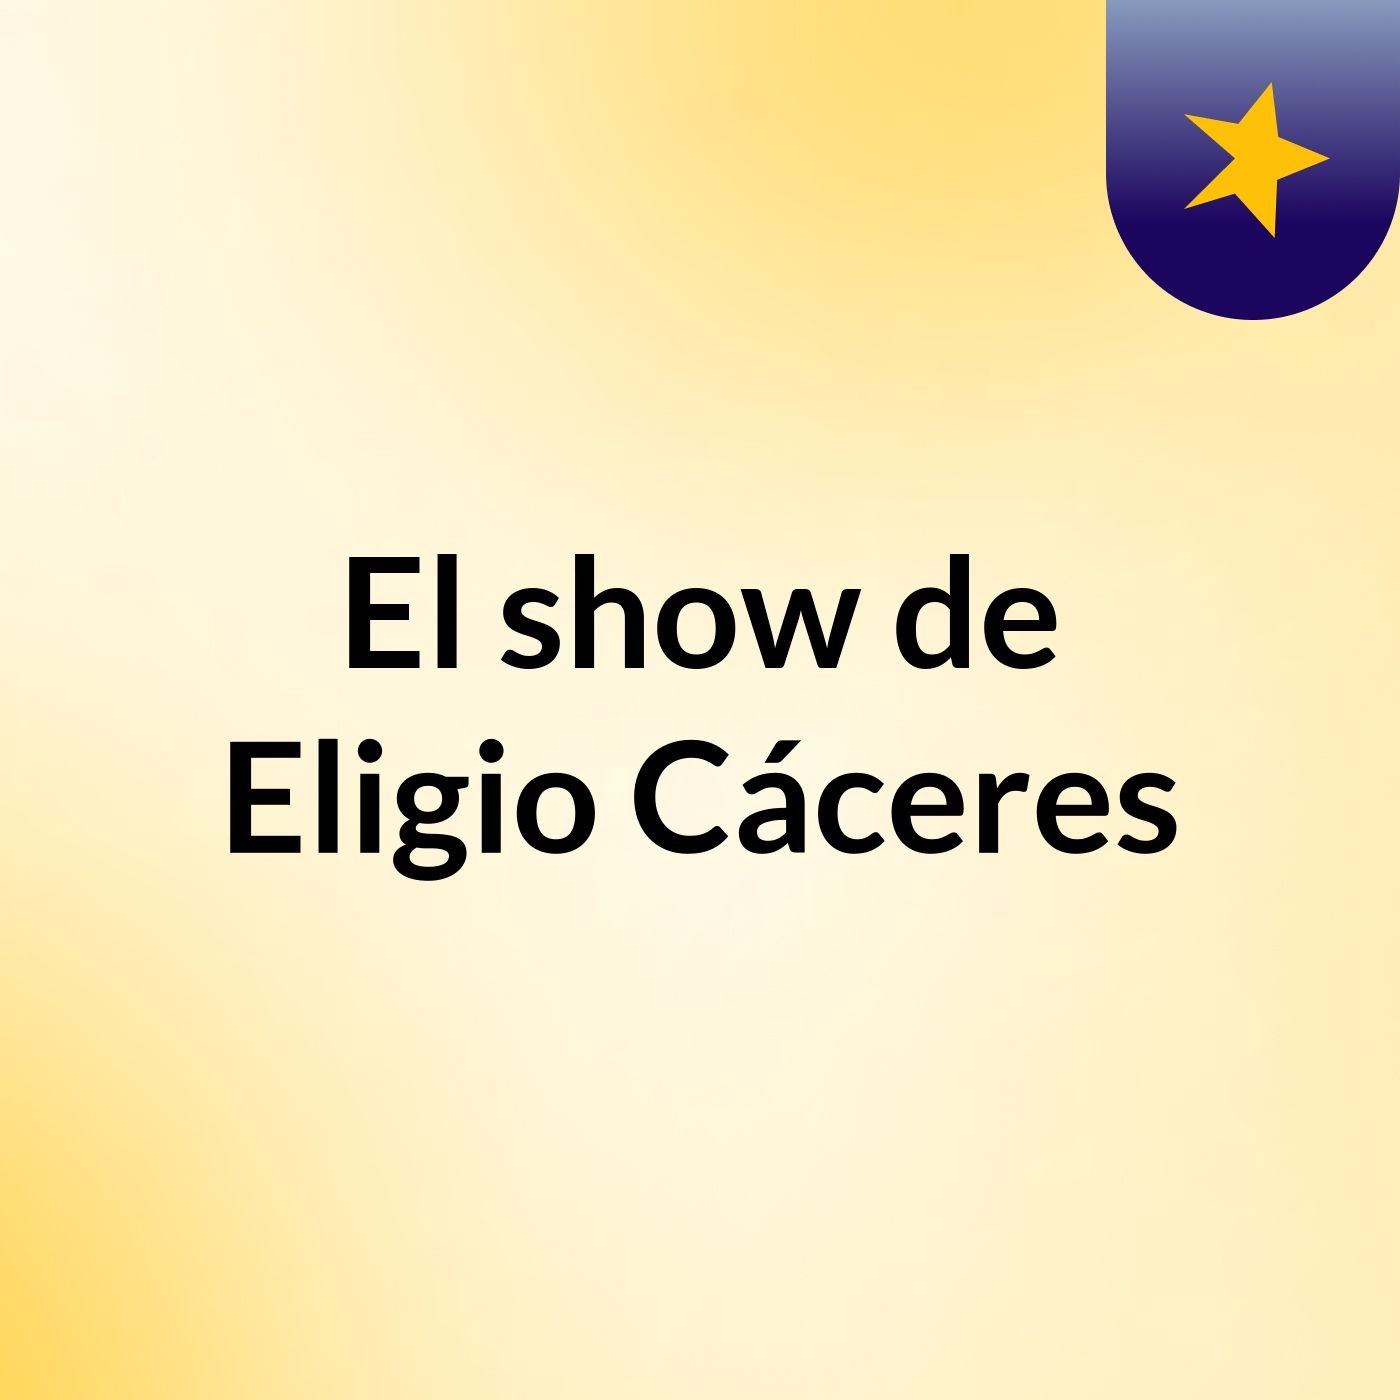 El show de Eligio Cáceres